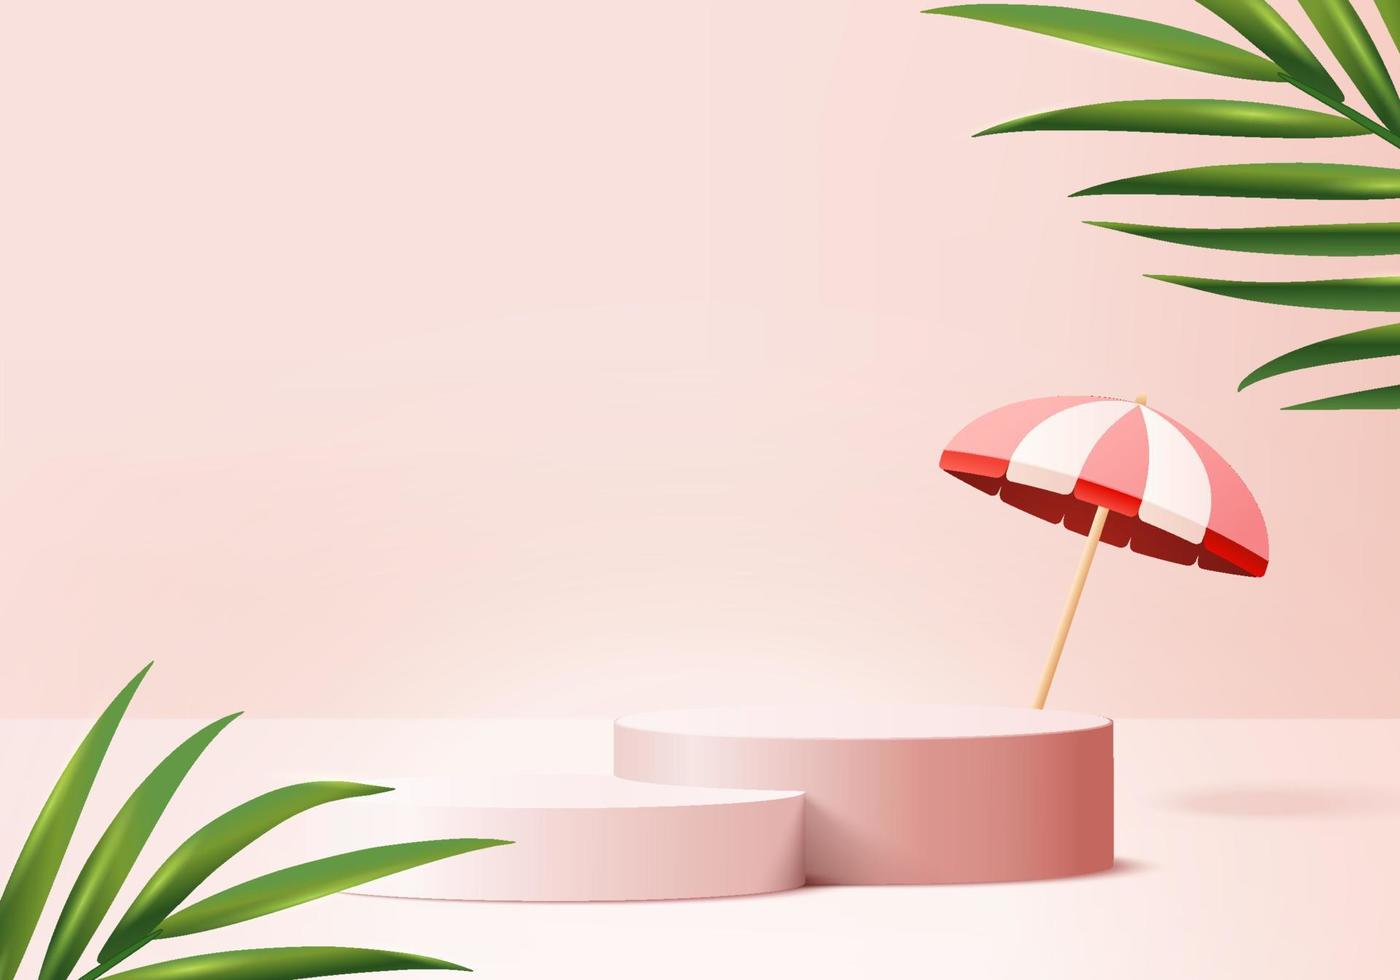 3D-achtergrondproducten tonen podiumscène met palmbladzomerplatform. achtergrond vector 3D render met paraplu podium. stand om cosmetisch product te tonen. podium voetstuk display roze studio